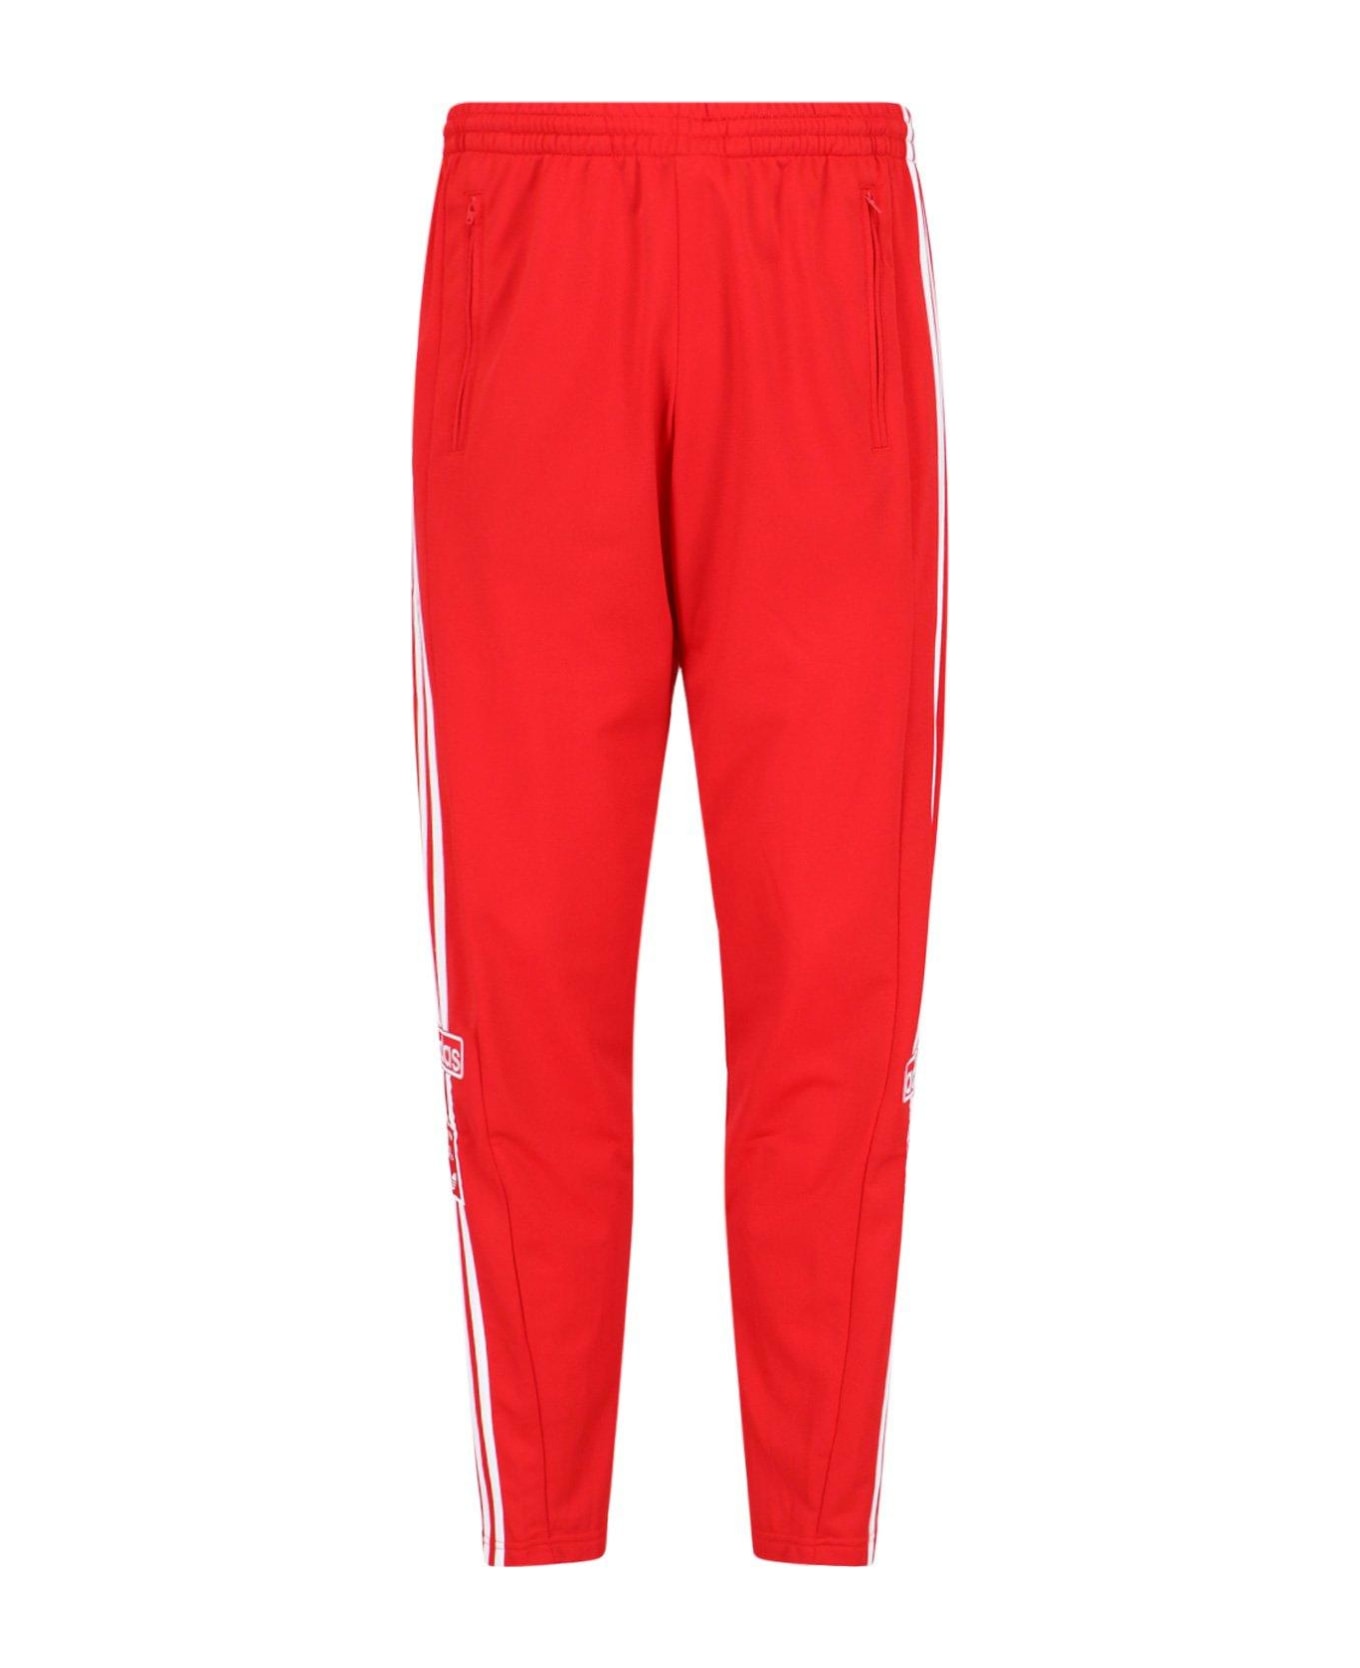 Adidas Pant Adidas - RED